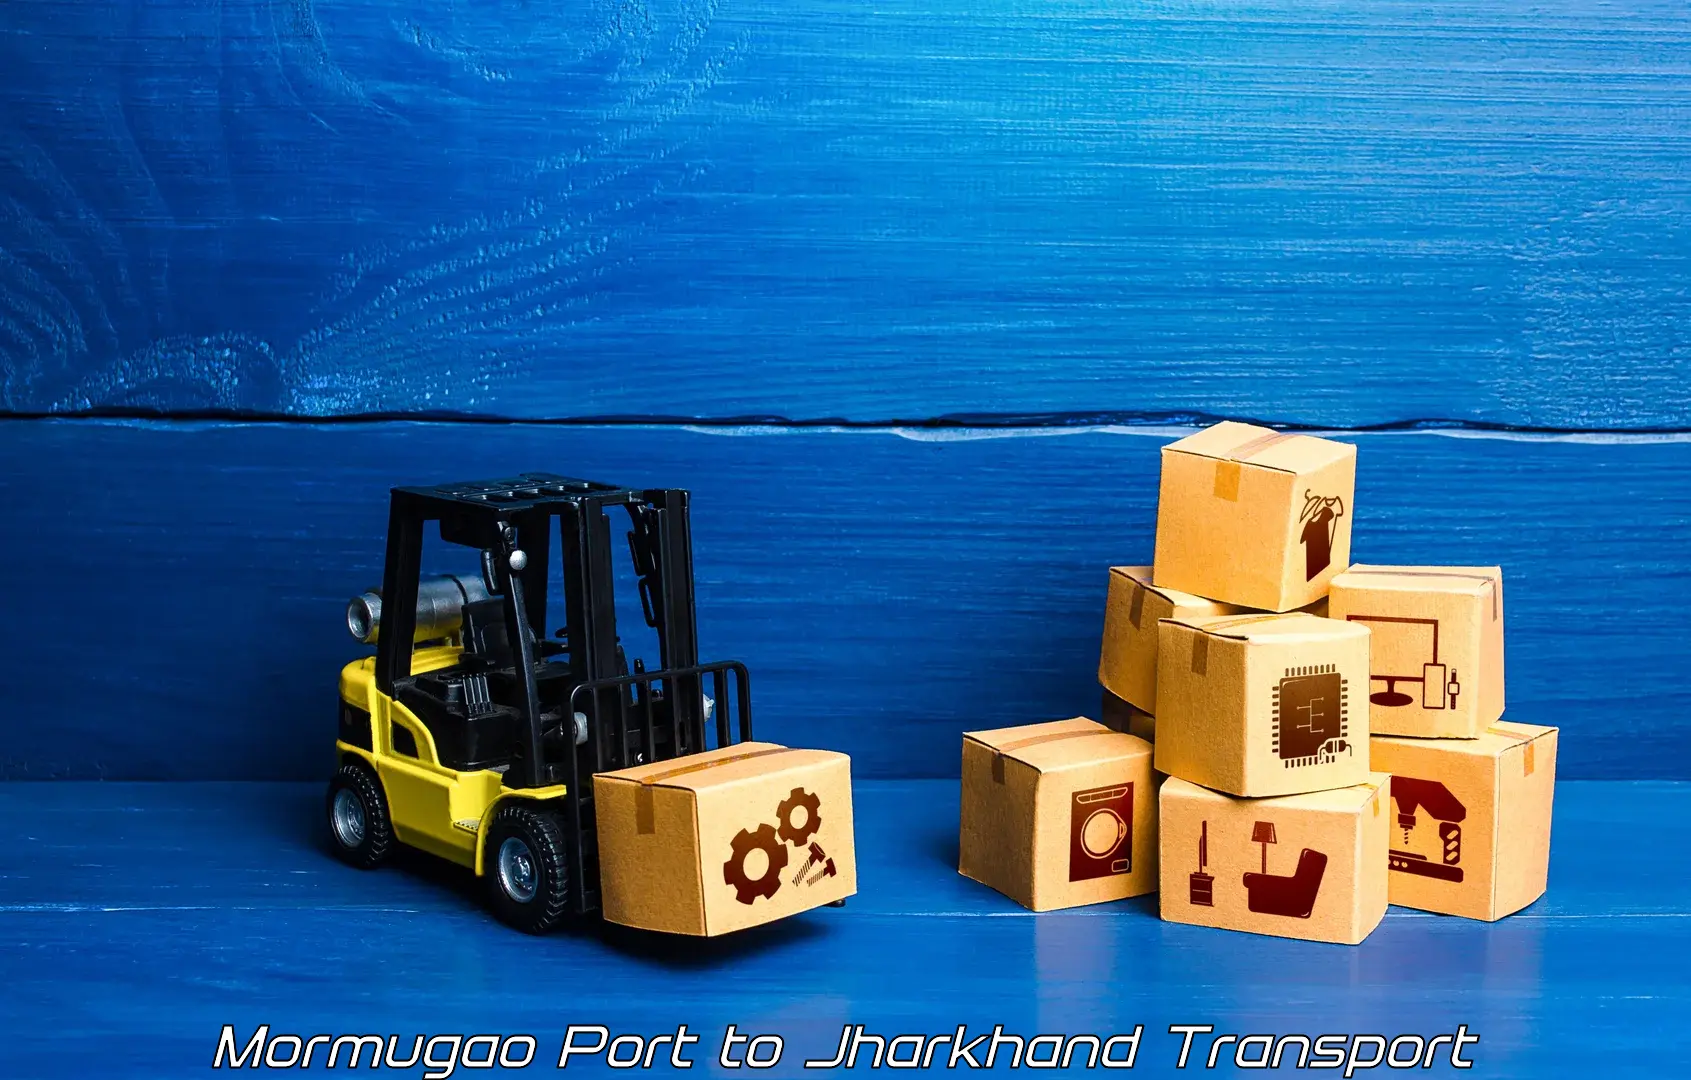 Daily transport service Mormugao Port to Bokaro